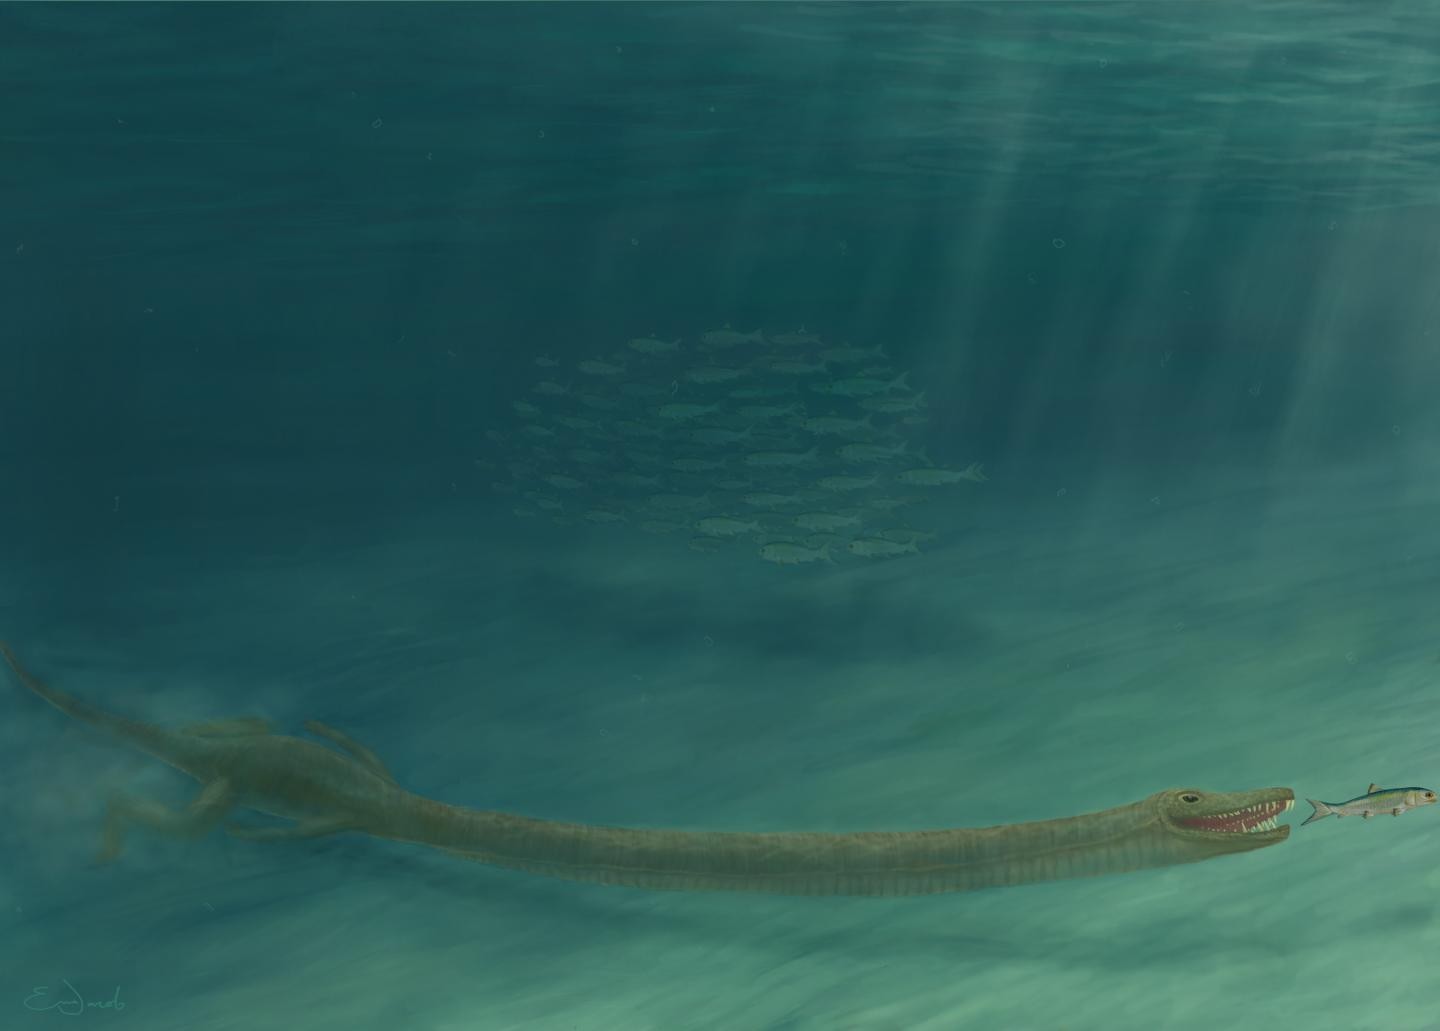 Dinossauros de pescoço longo viviam no oceano, não na terra (Foto: Emma Finley-Jacob)